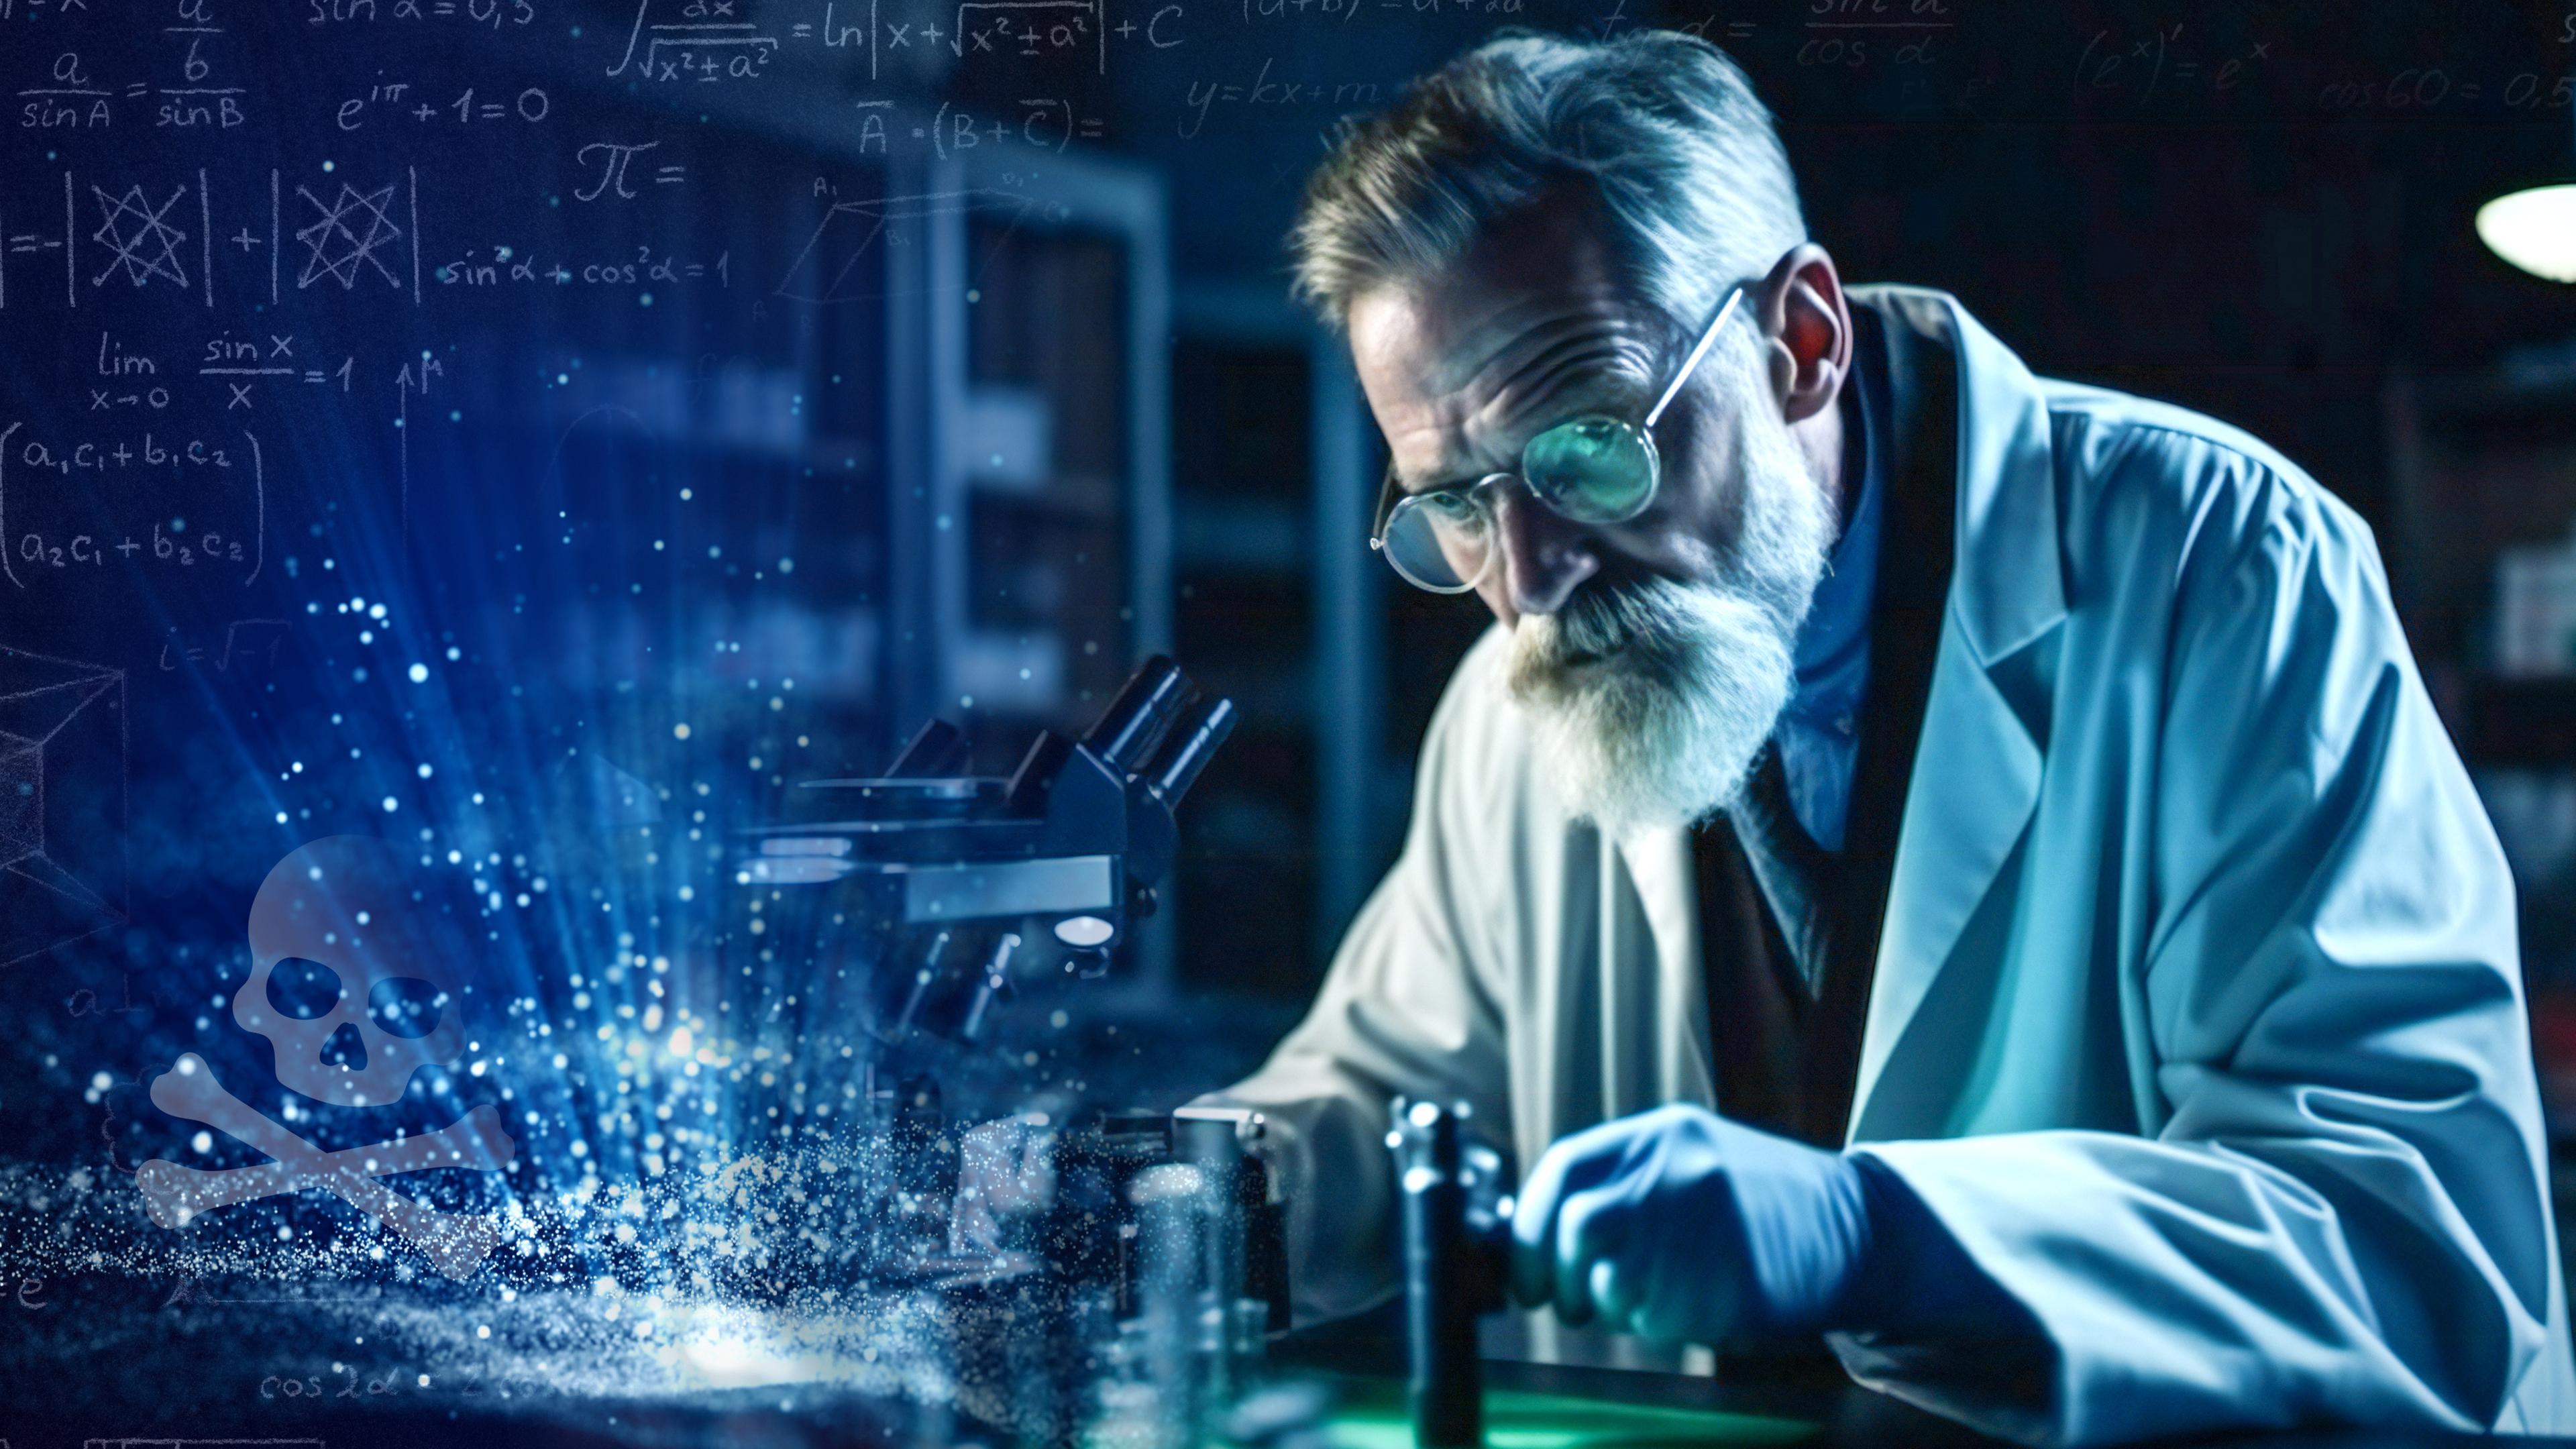 Ein älterer Wissenschaftler, im weißen Laborkittel, ist in seine Arbeit vertieft. Daneben ist ein Totenkopf vor einem blauen Hintergrund mit leicht erkennbaren mathematischen Formeln.